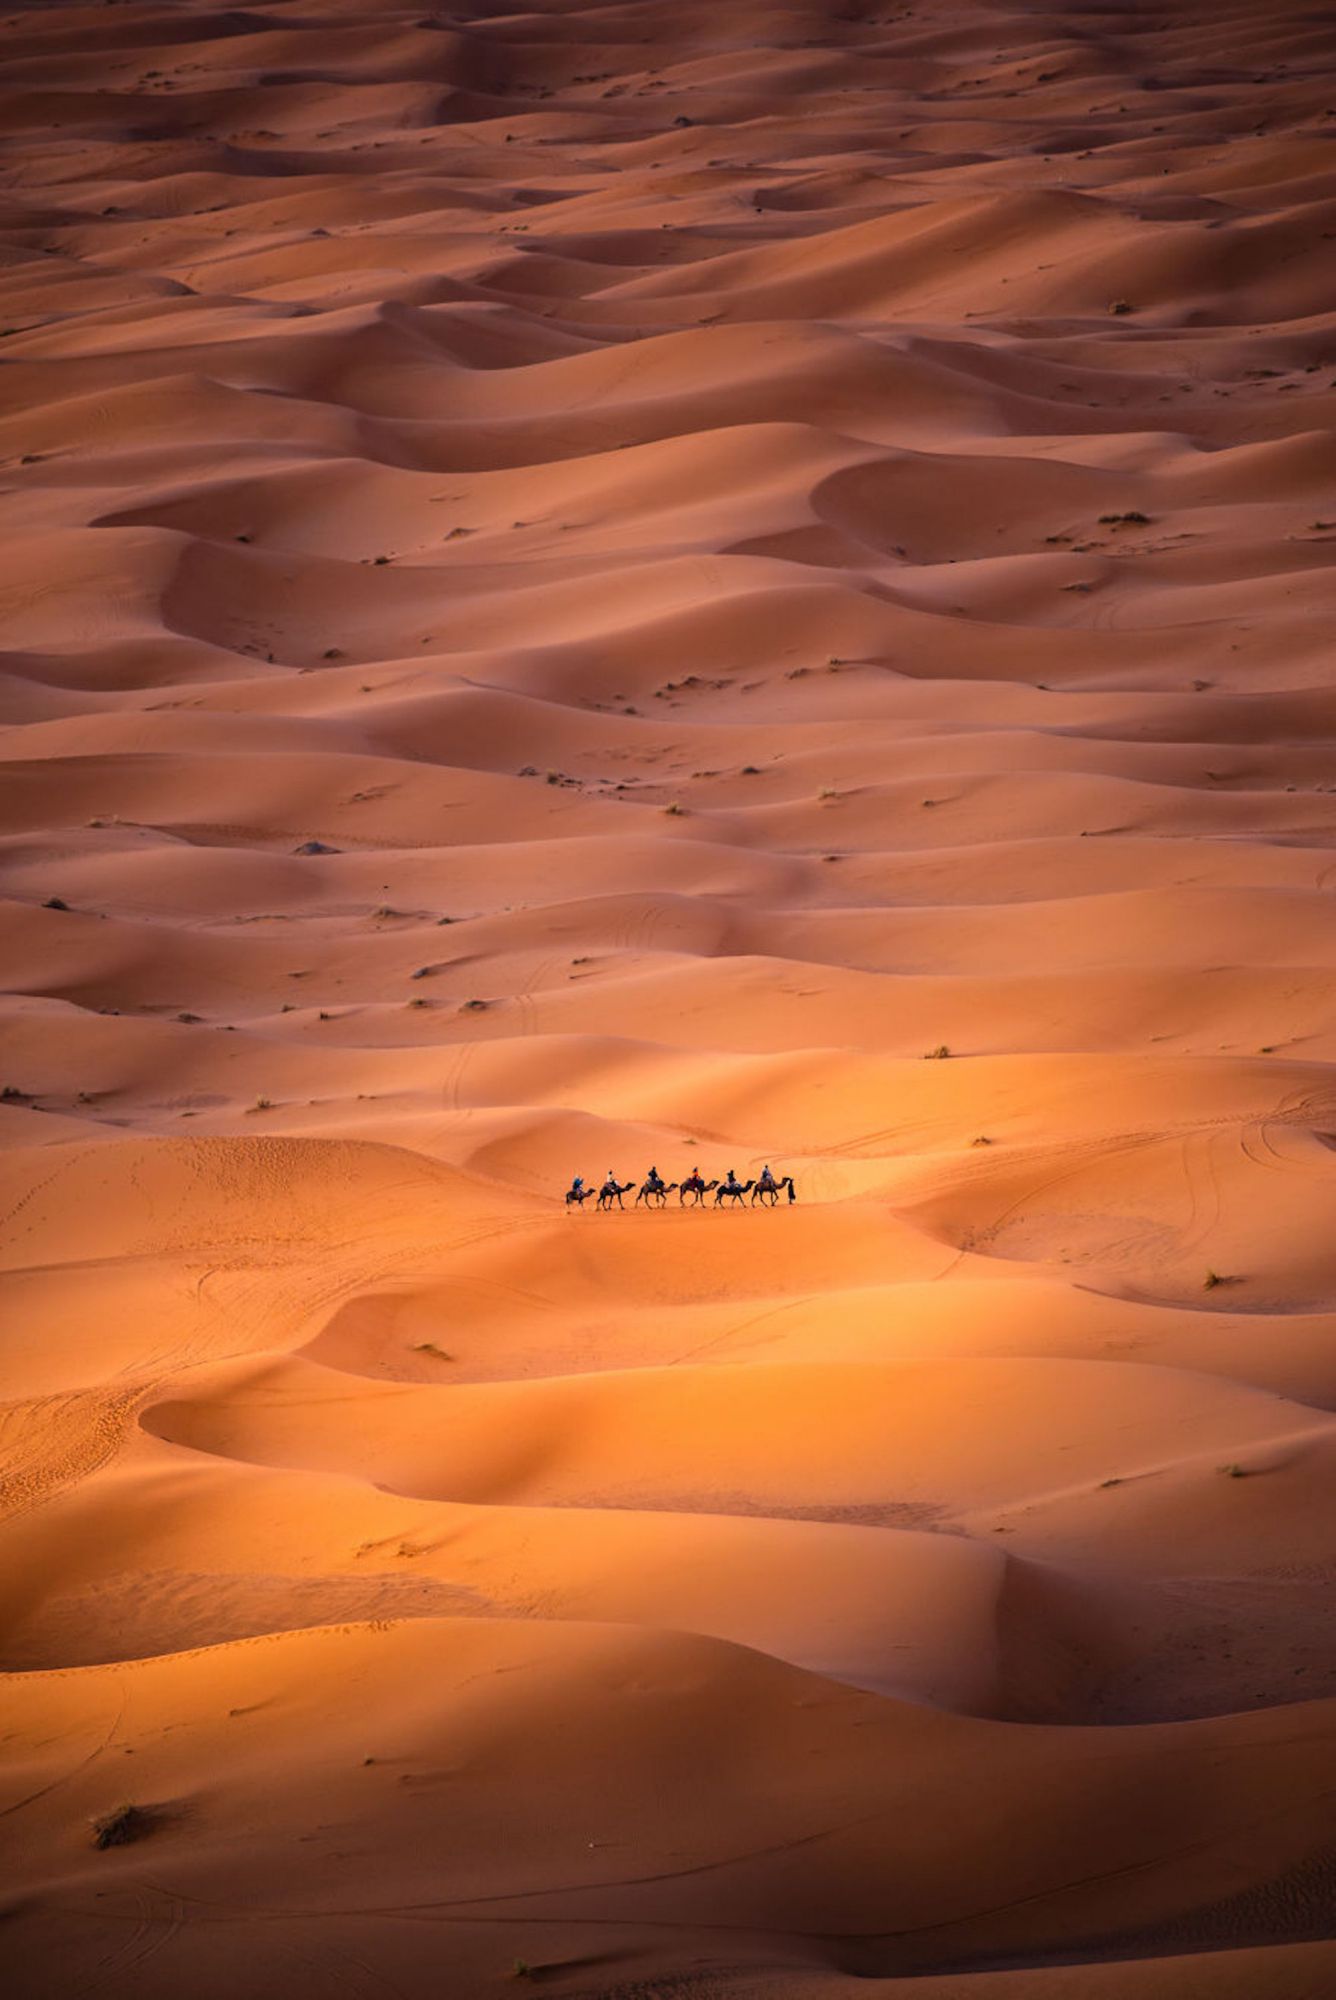 Foto foi tirada de uma duna alta em Merzouga, Marrocos, onde os nômades são vistos se movendo pelo deserto do Saara